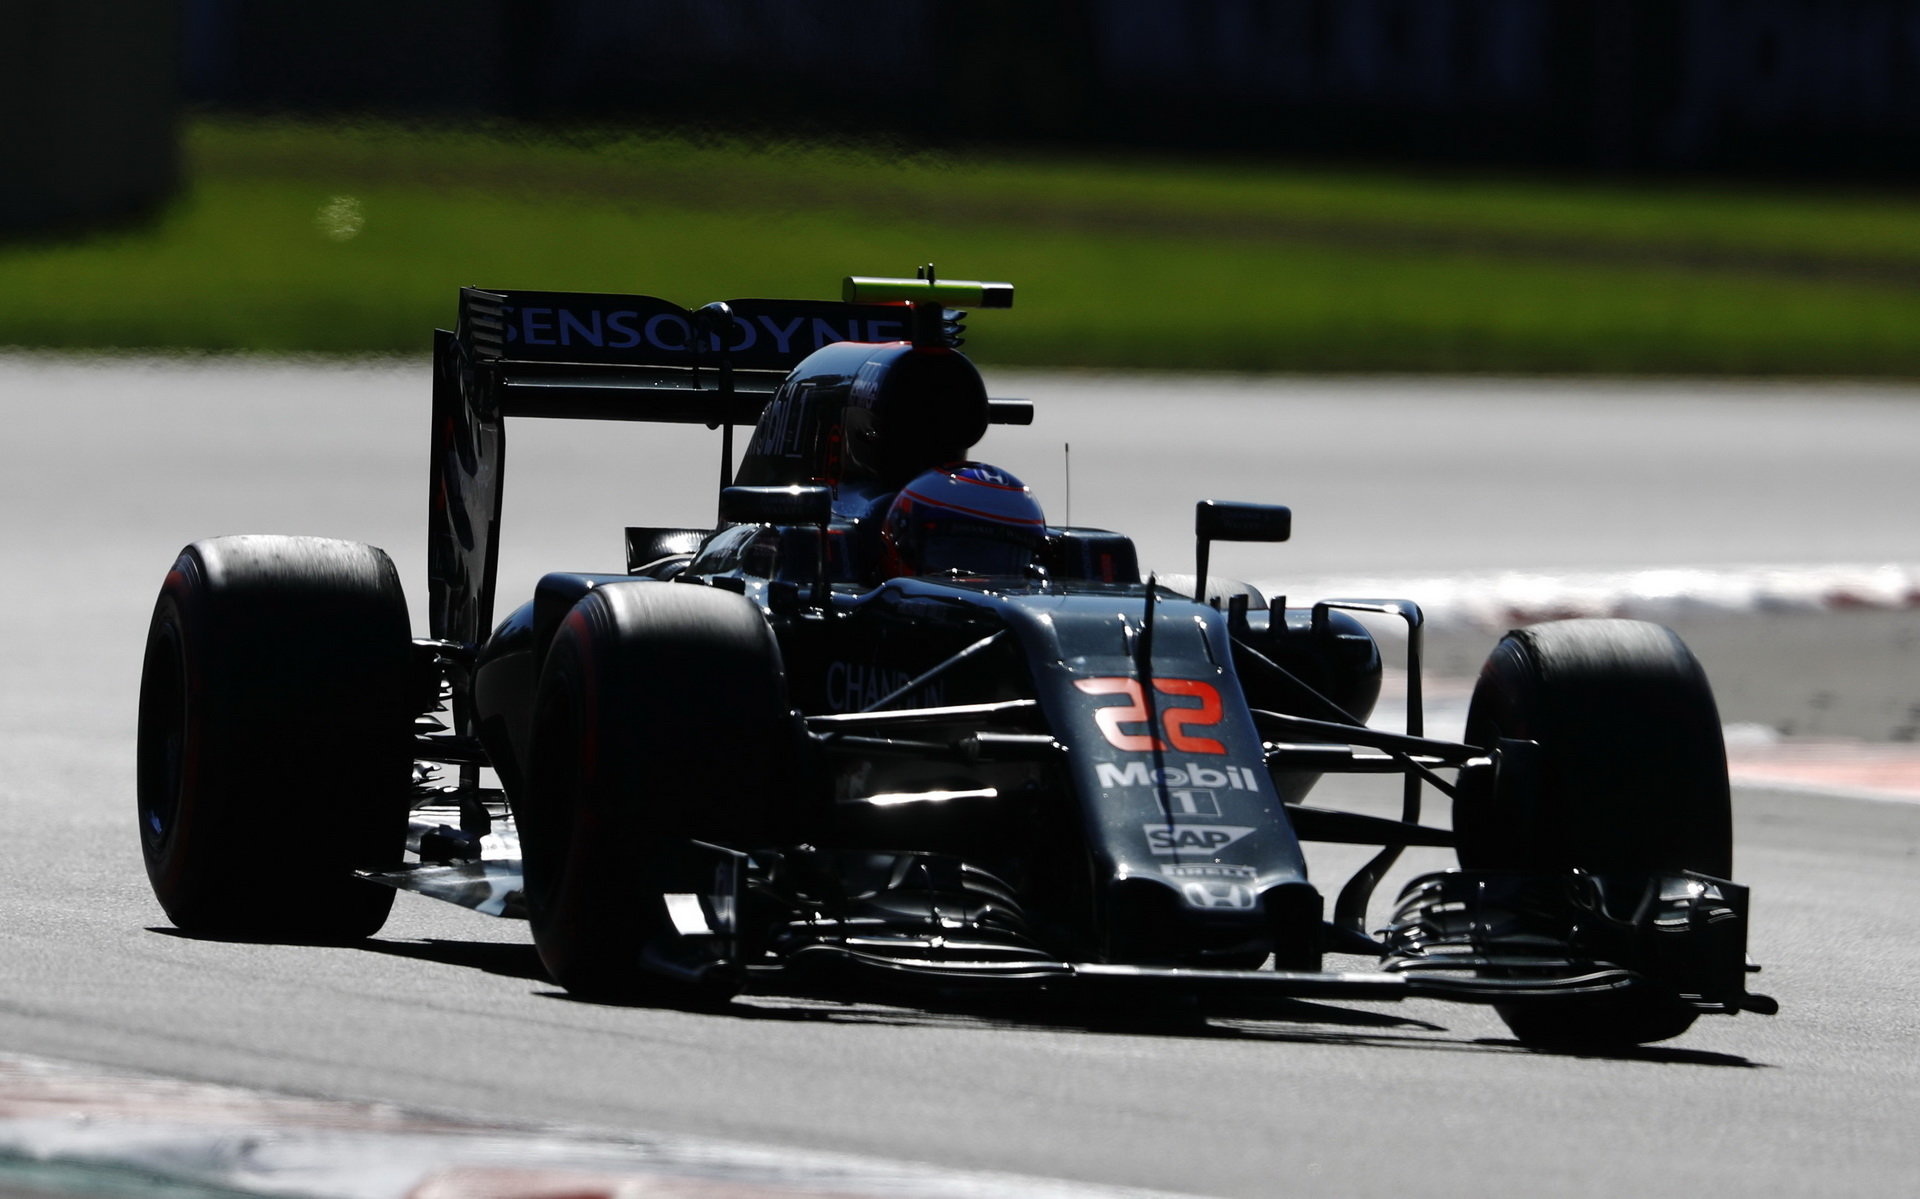 Od poslední jízdy Buttona v F1 uteklo sedm měsíců